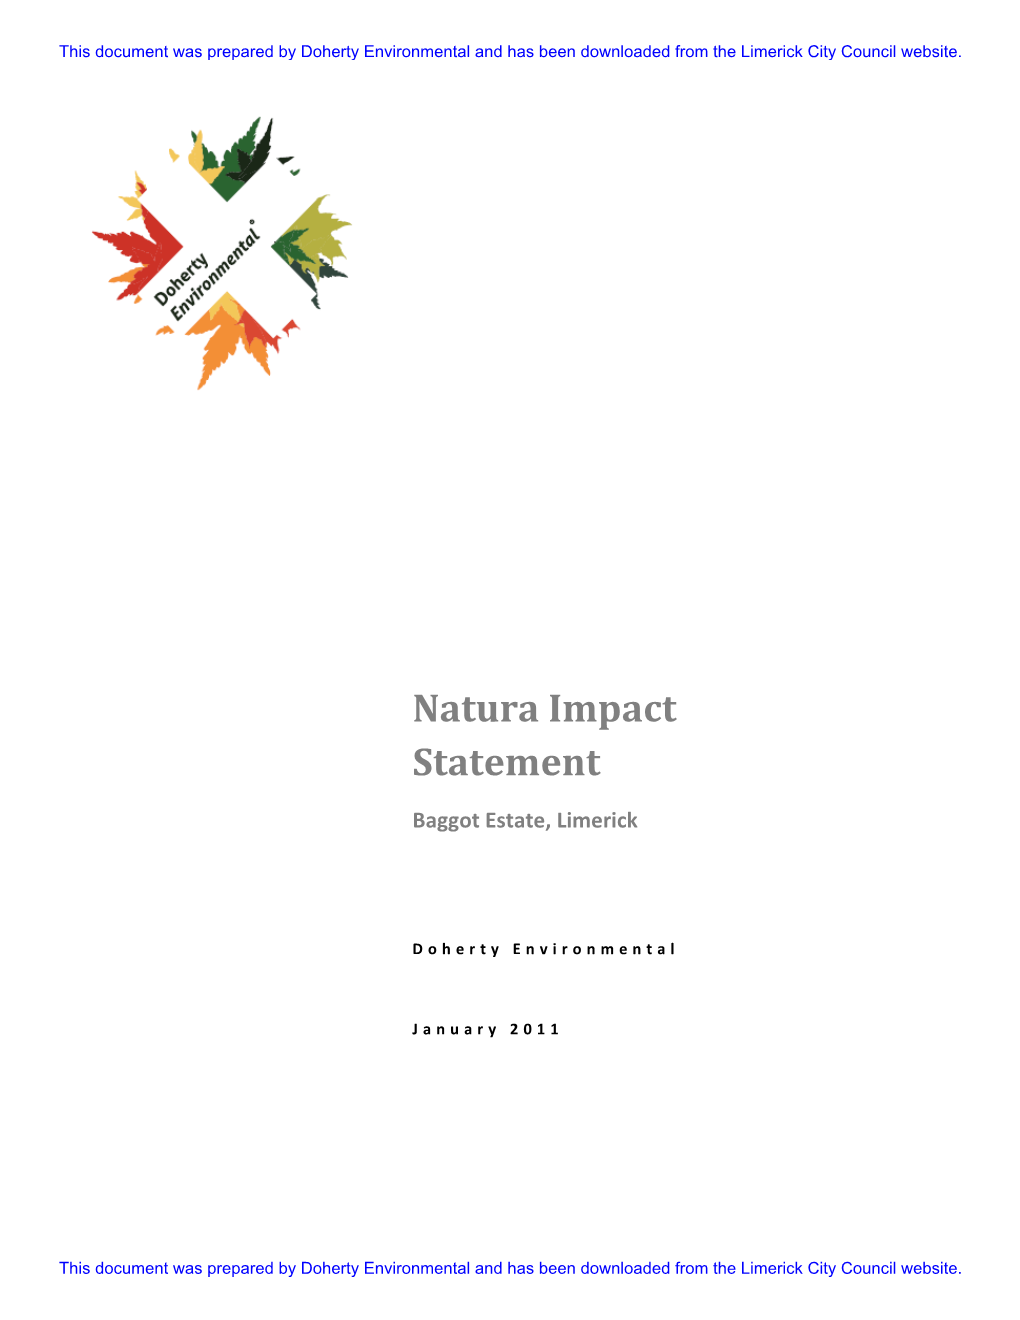 Natura Impact Statement